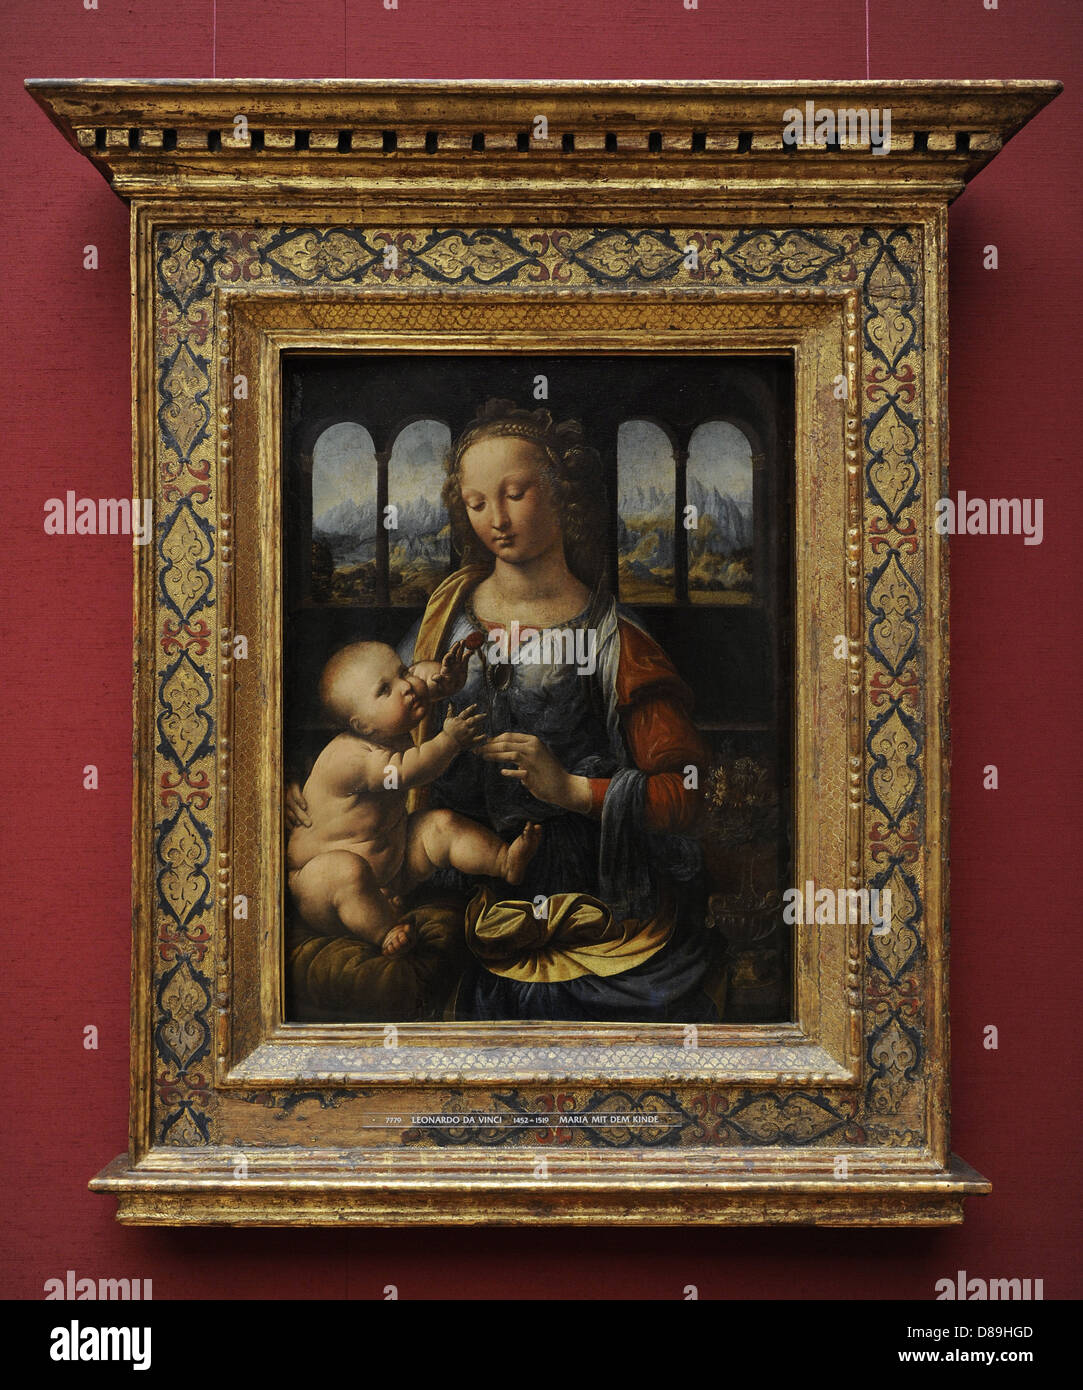 Leonardo da Vinci (1452-1519). Rinascimento Italiano polymath. La Madonna del garofano. 1478-1480. Alte Pinakothek. Monaco di Baviera. Foto Stock